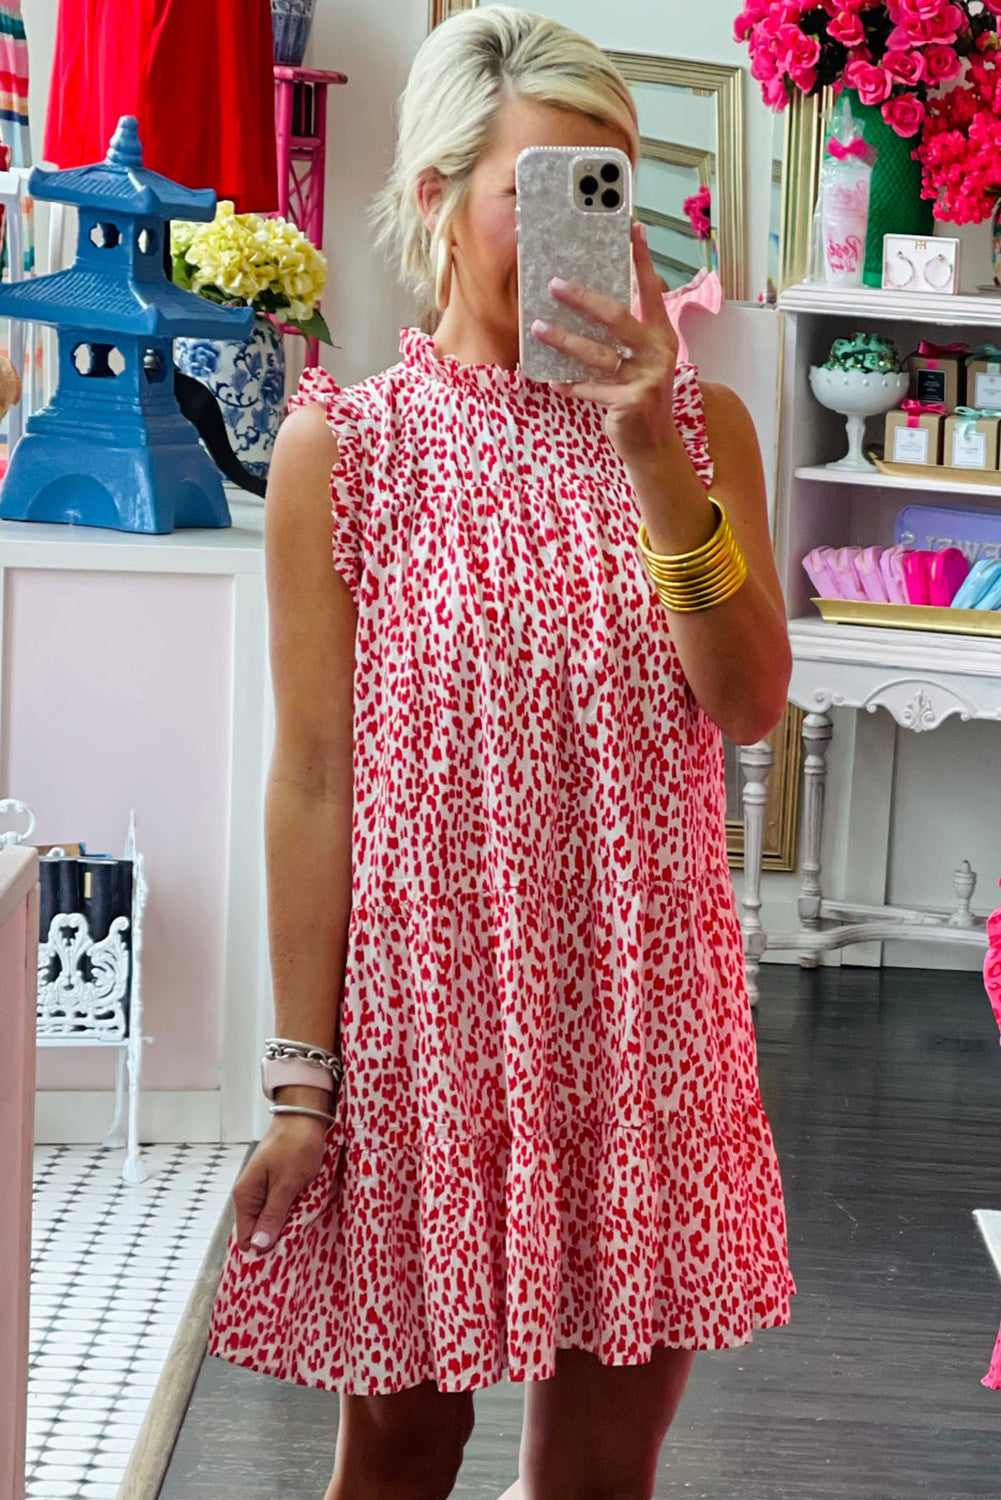 Pink Leopard Ruffled Tiered Sleeveless Mini Dress Mini Dresses JT's Designer Fashion